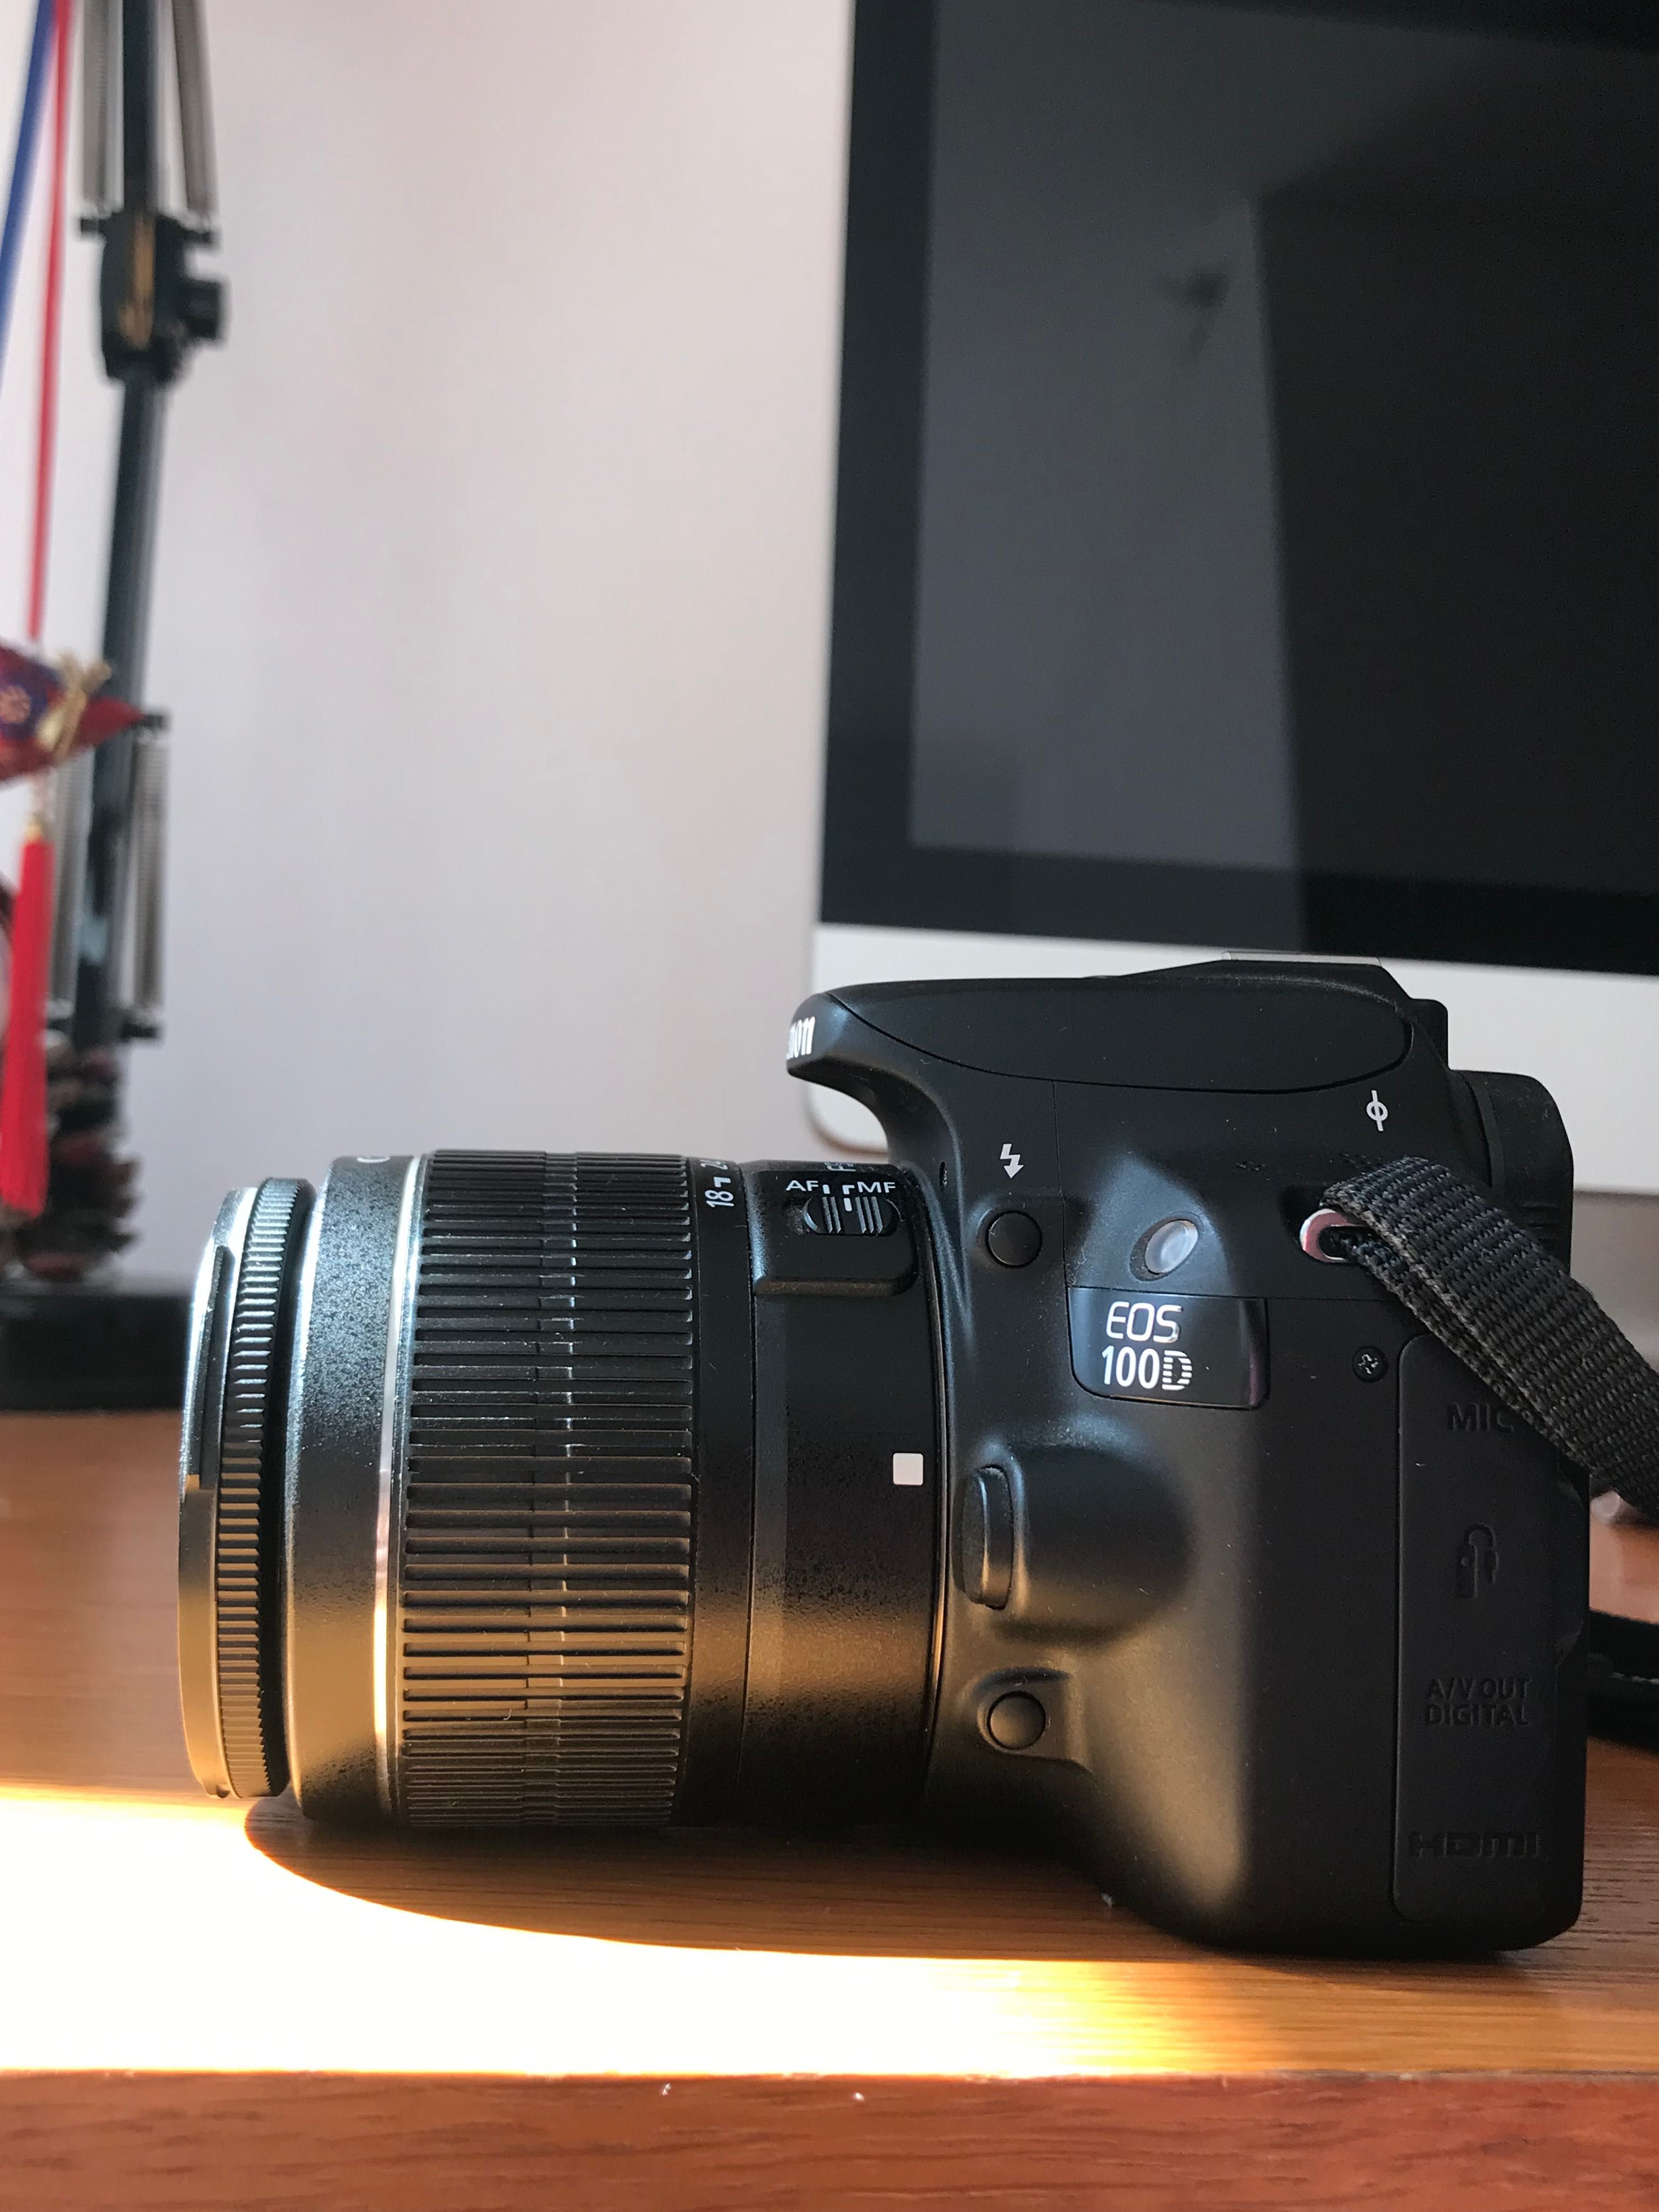 Máquina fotográfica Canon EOS 100D + objetiva 18-55mm + acessórios